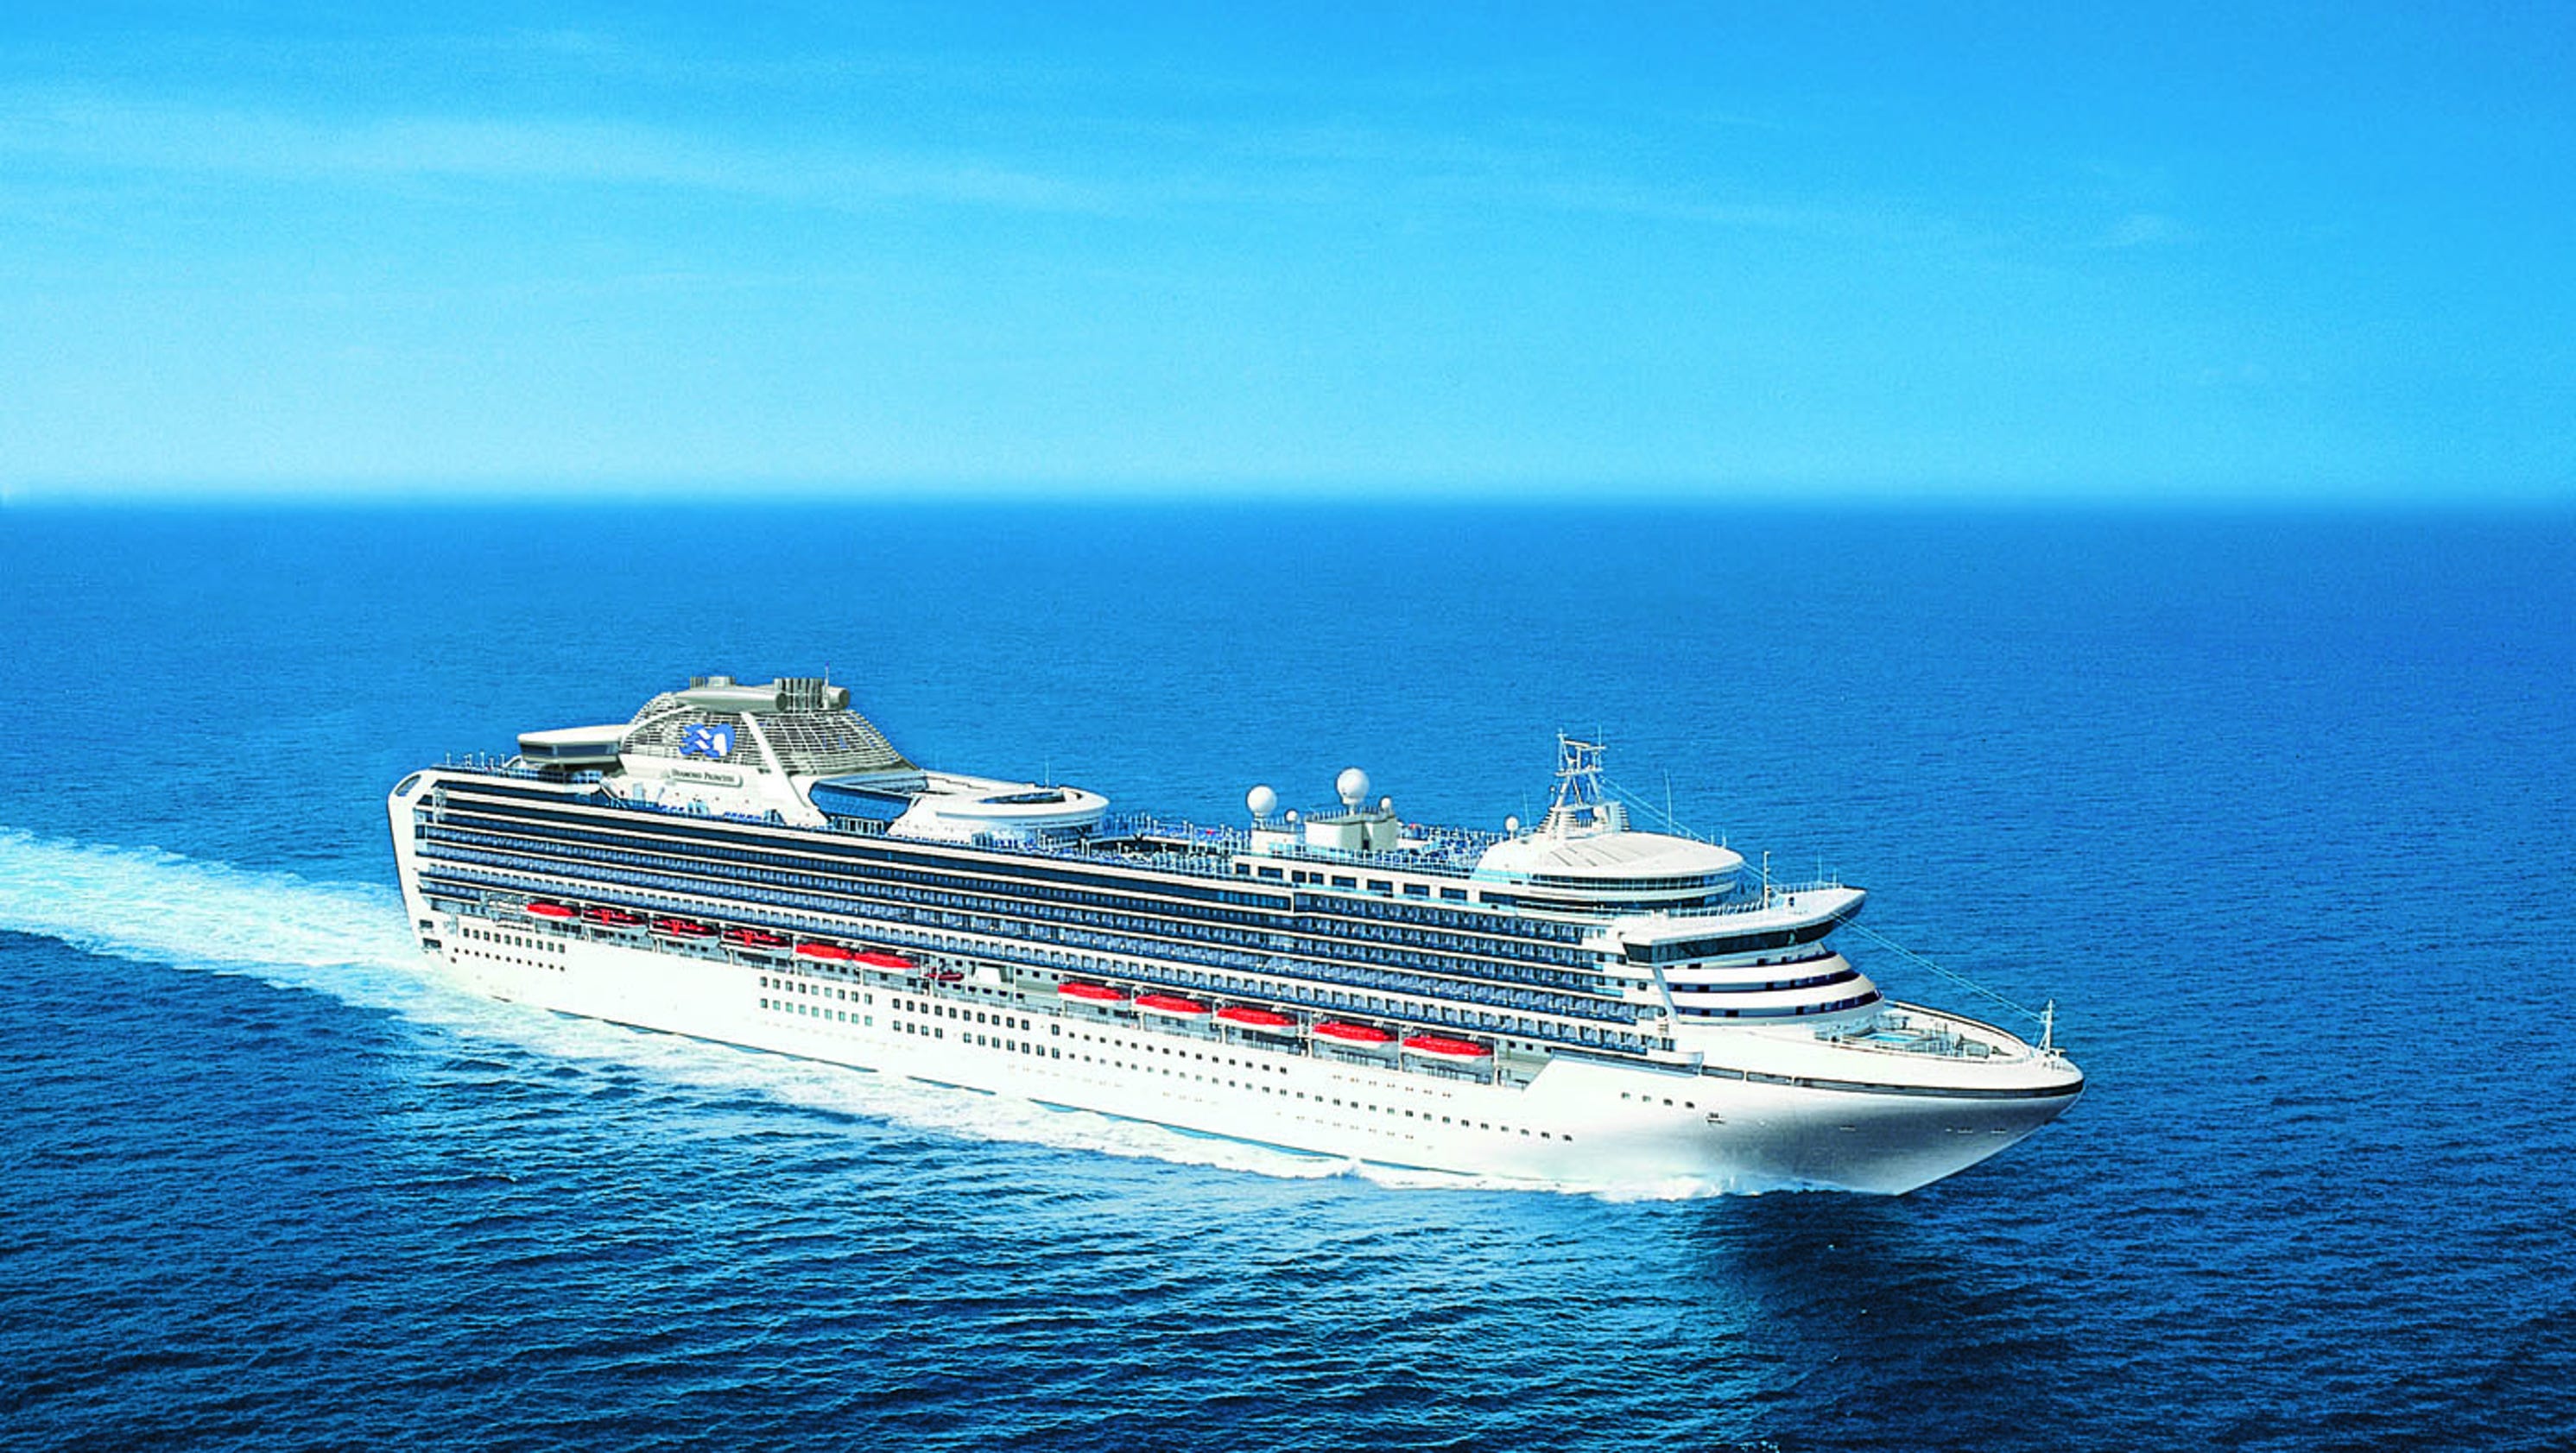 Cruise ship tours: Princess Cruises' Diamond Princess